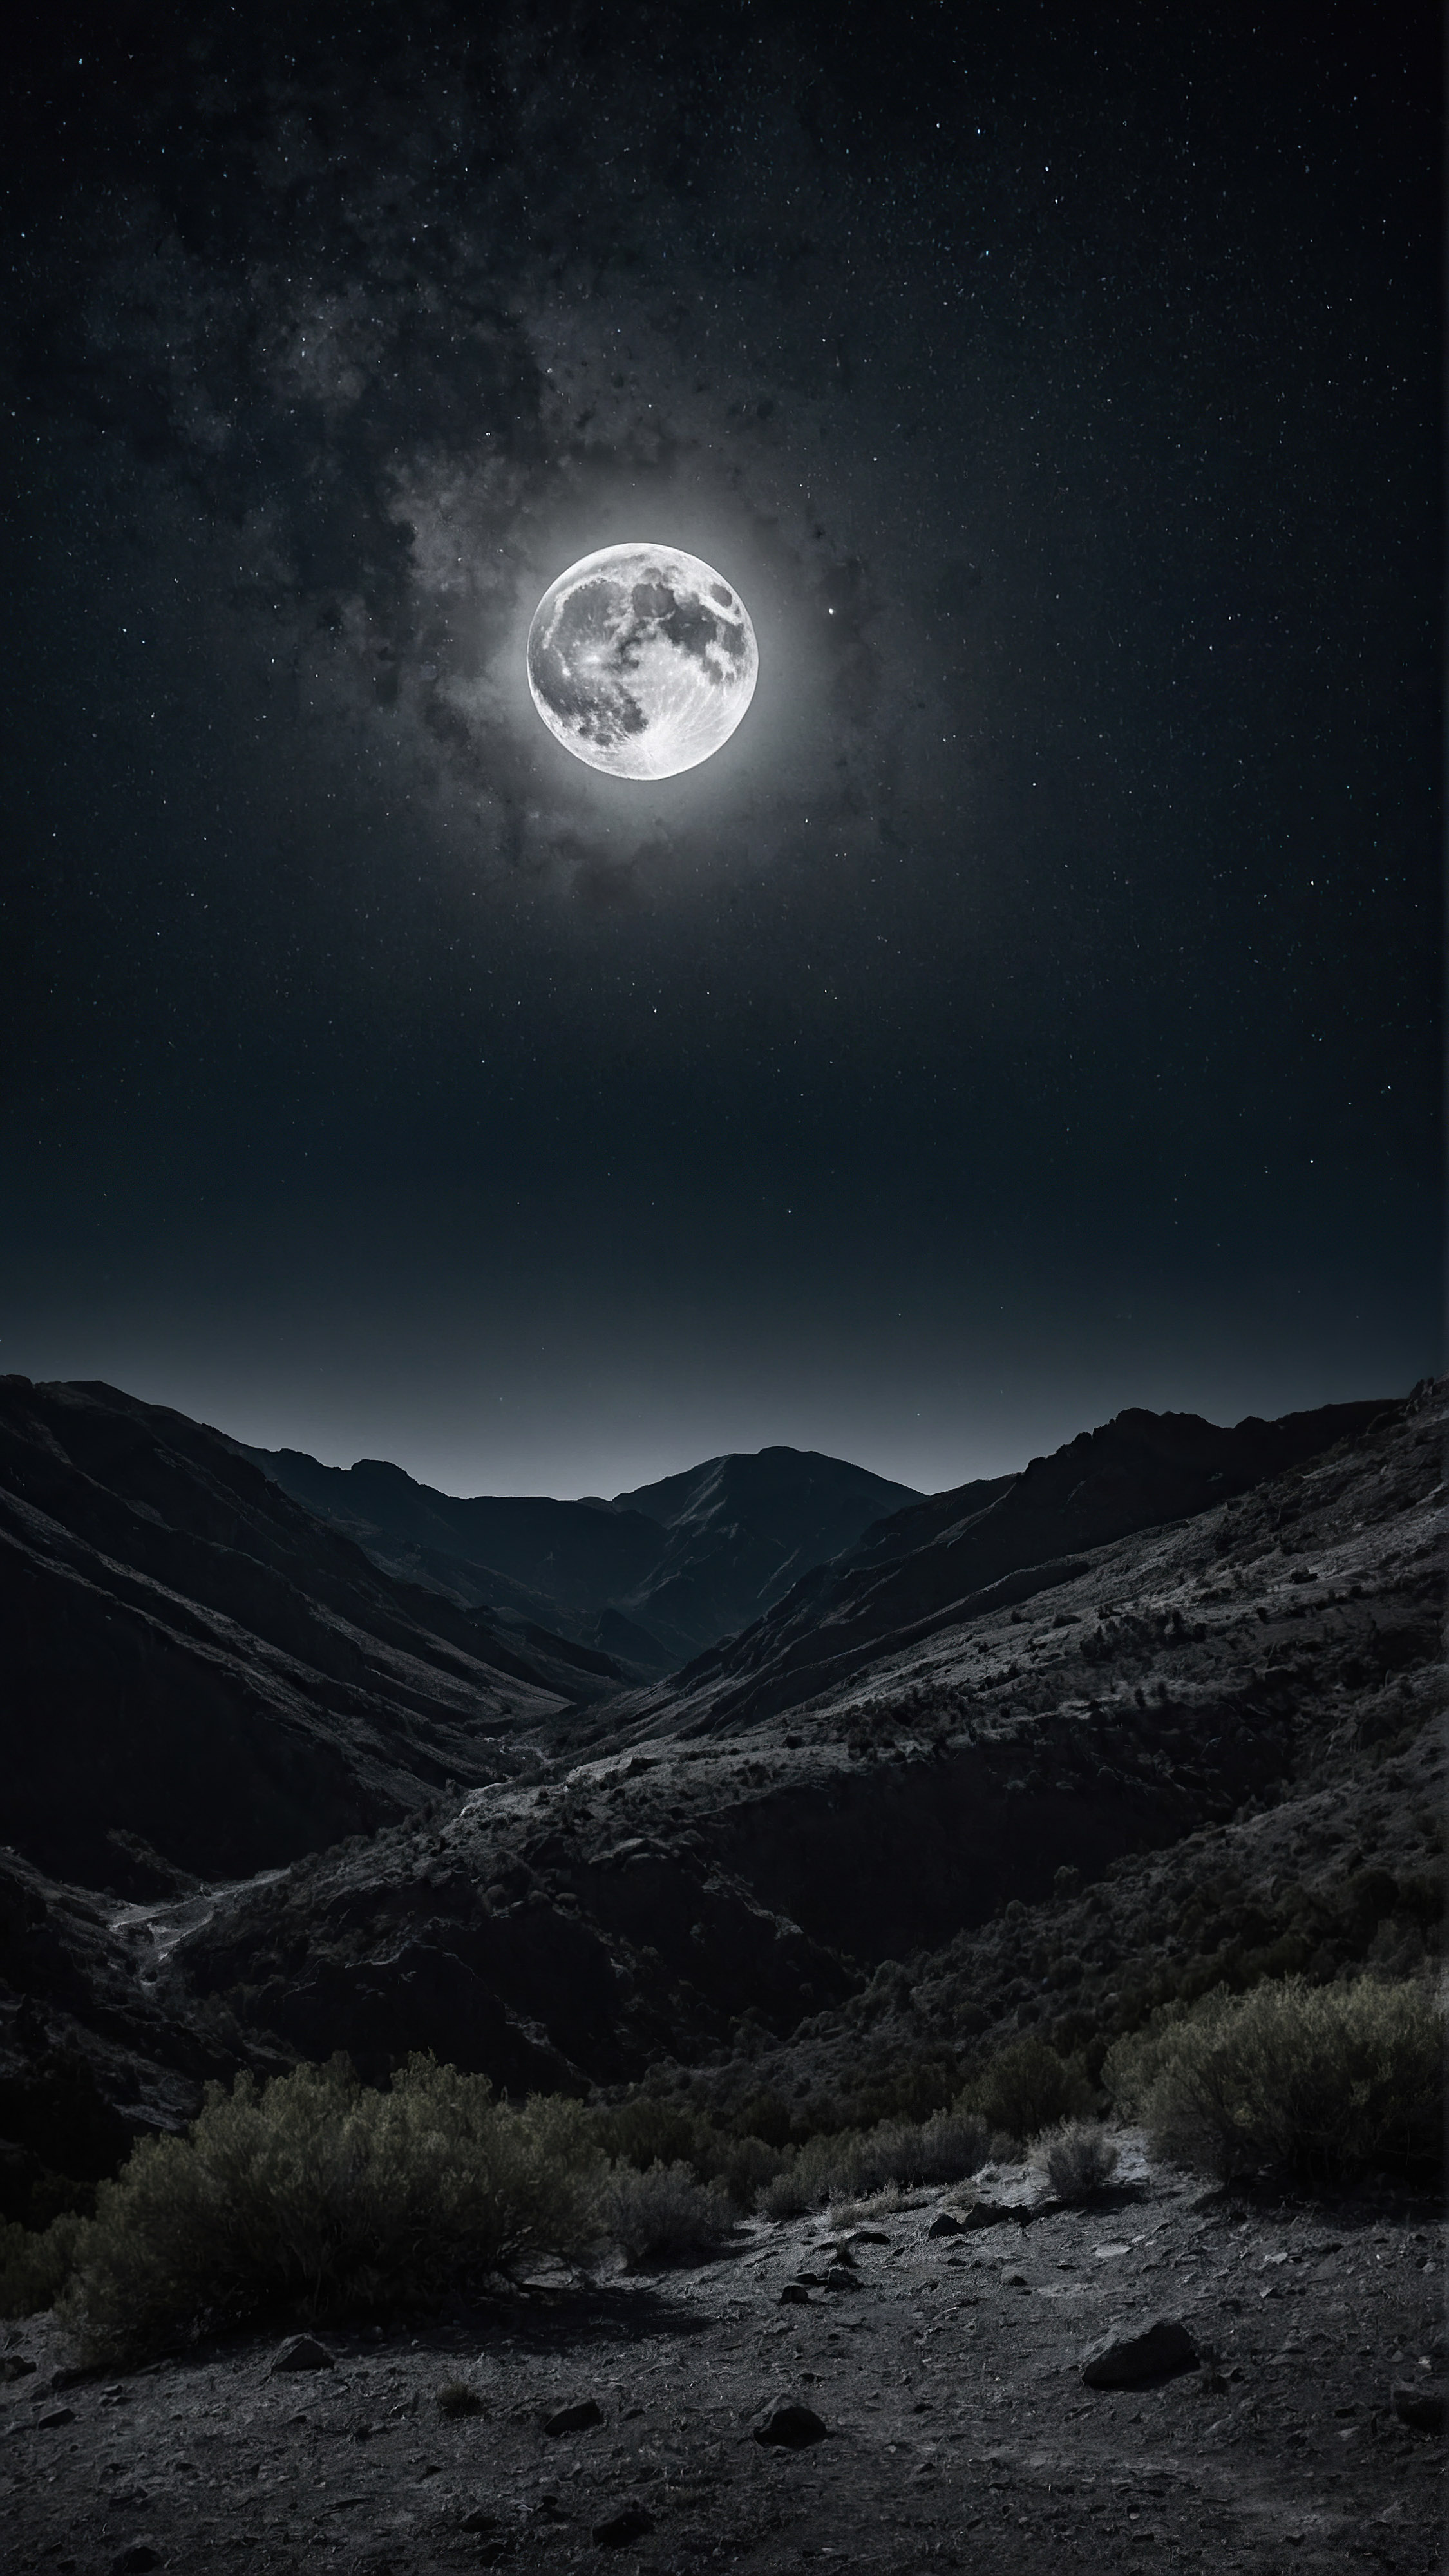 Découvrez la sérénité du fond d'écran noir pour iPhone, présentant une pleine lune brillante illuminant un ciel étoilé au-dessus d'une chaîne de montagnes accidentée.